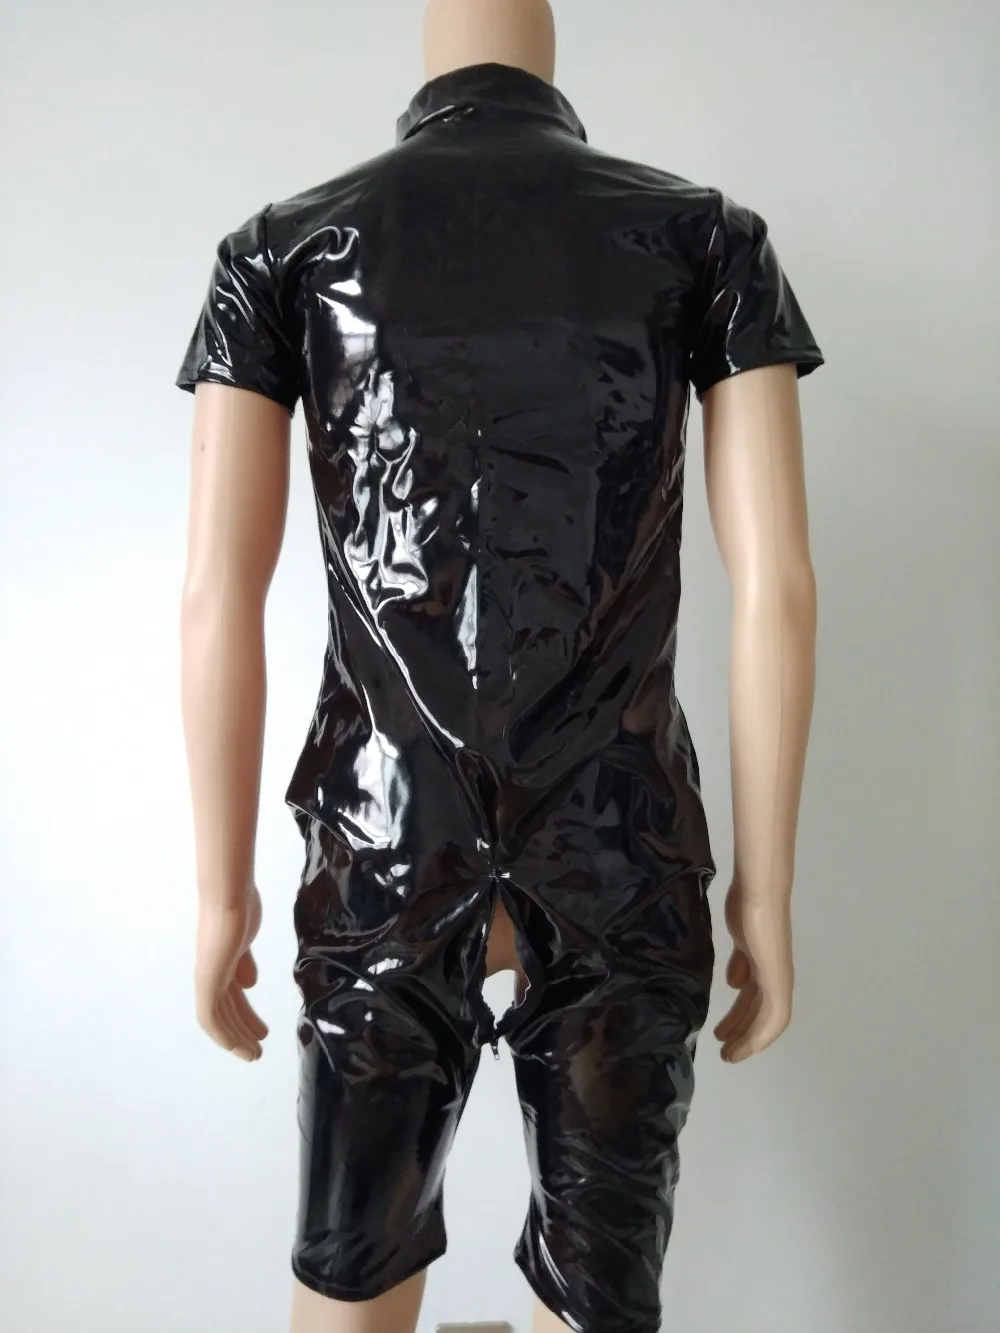 Бренд Косплей костюмы на Хэллоуин блестящий цвет металлик ПВХ искусственная кожа глянцевая краска кожаные шорты колготки игра забавная